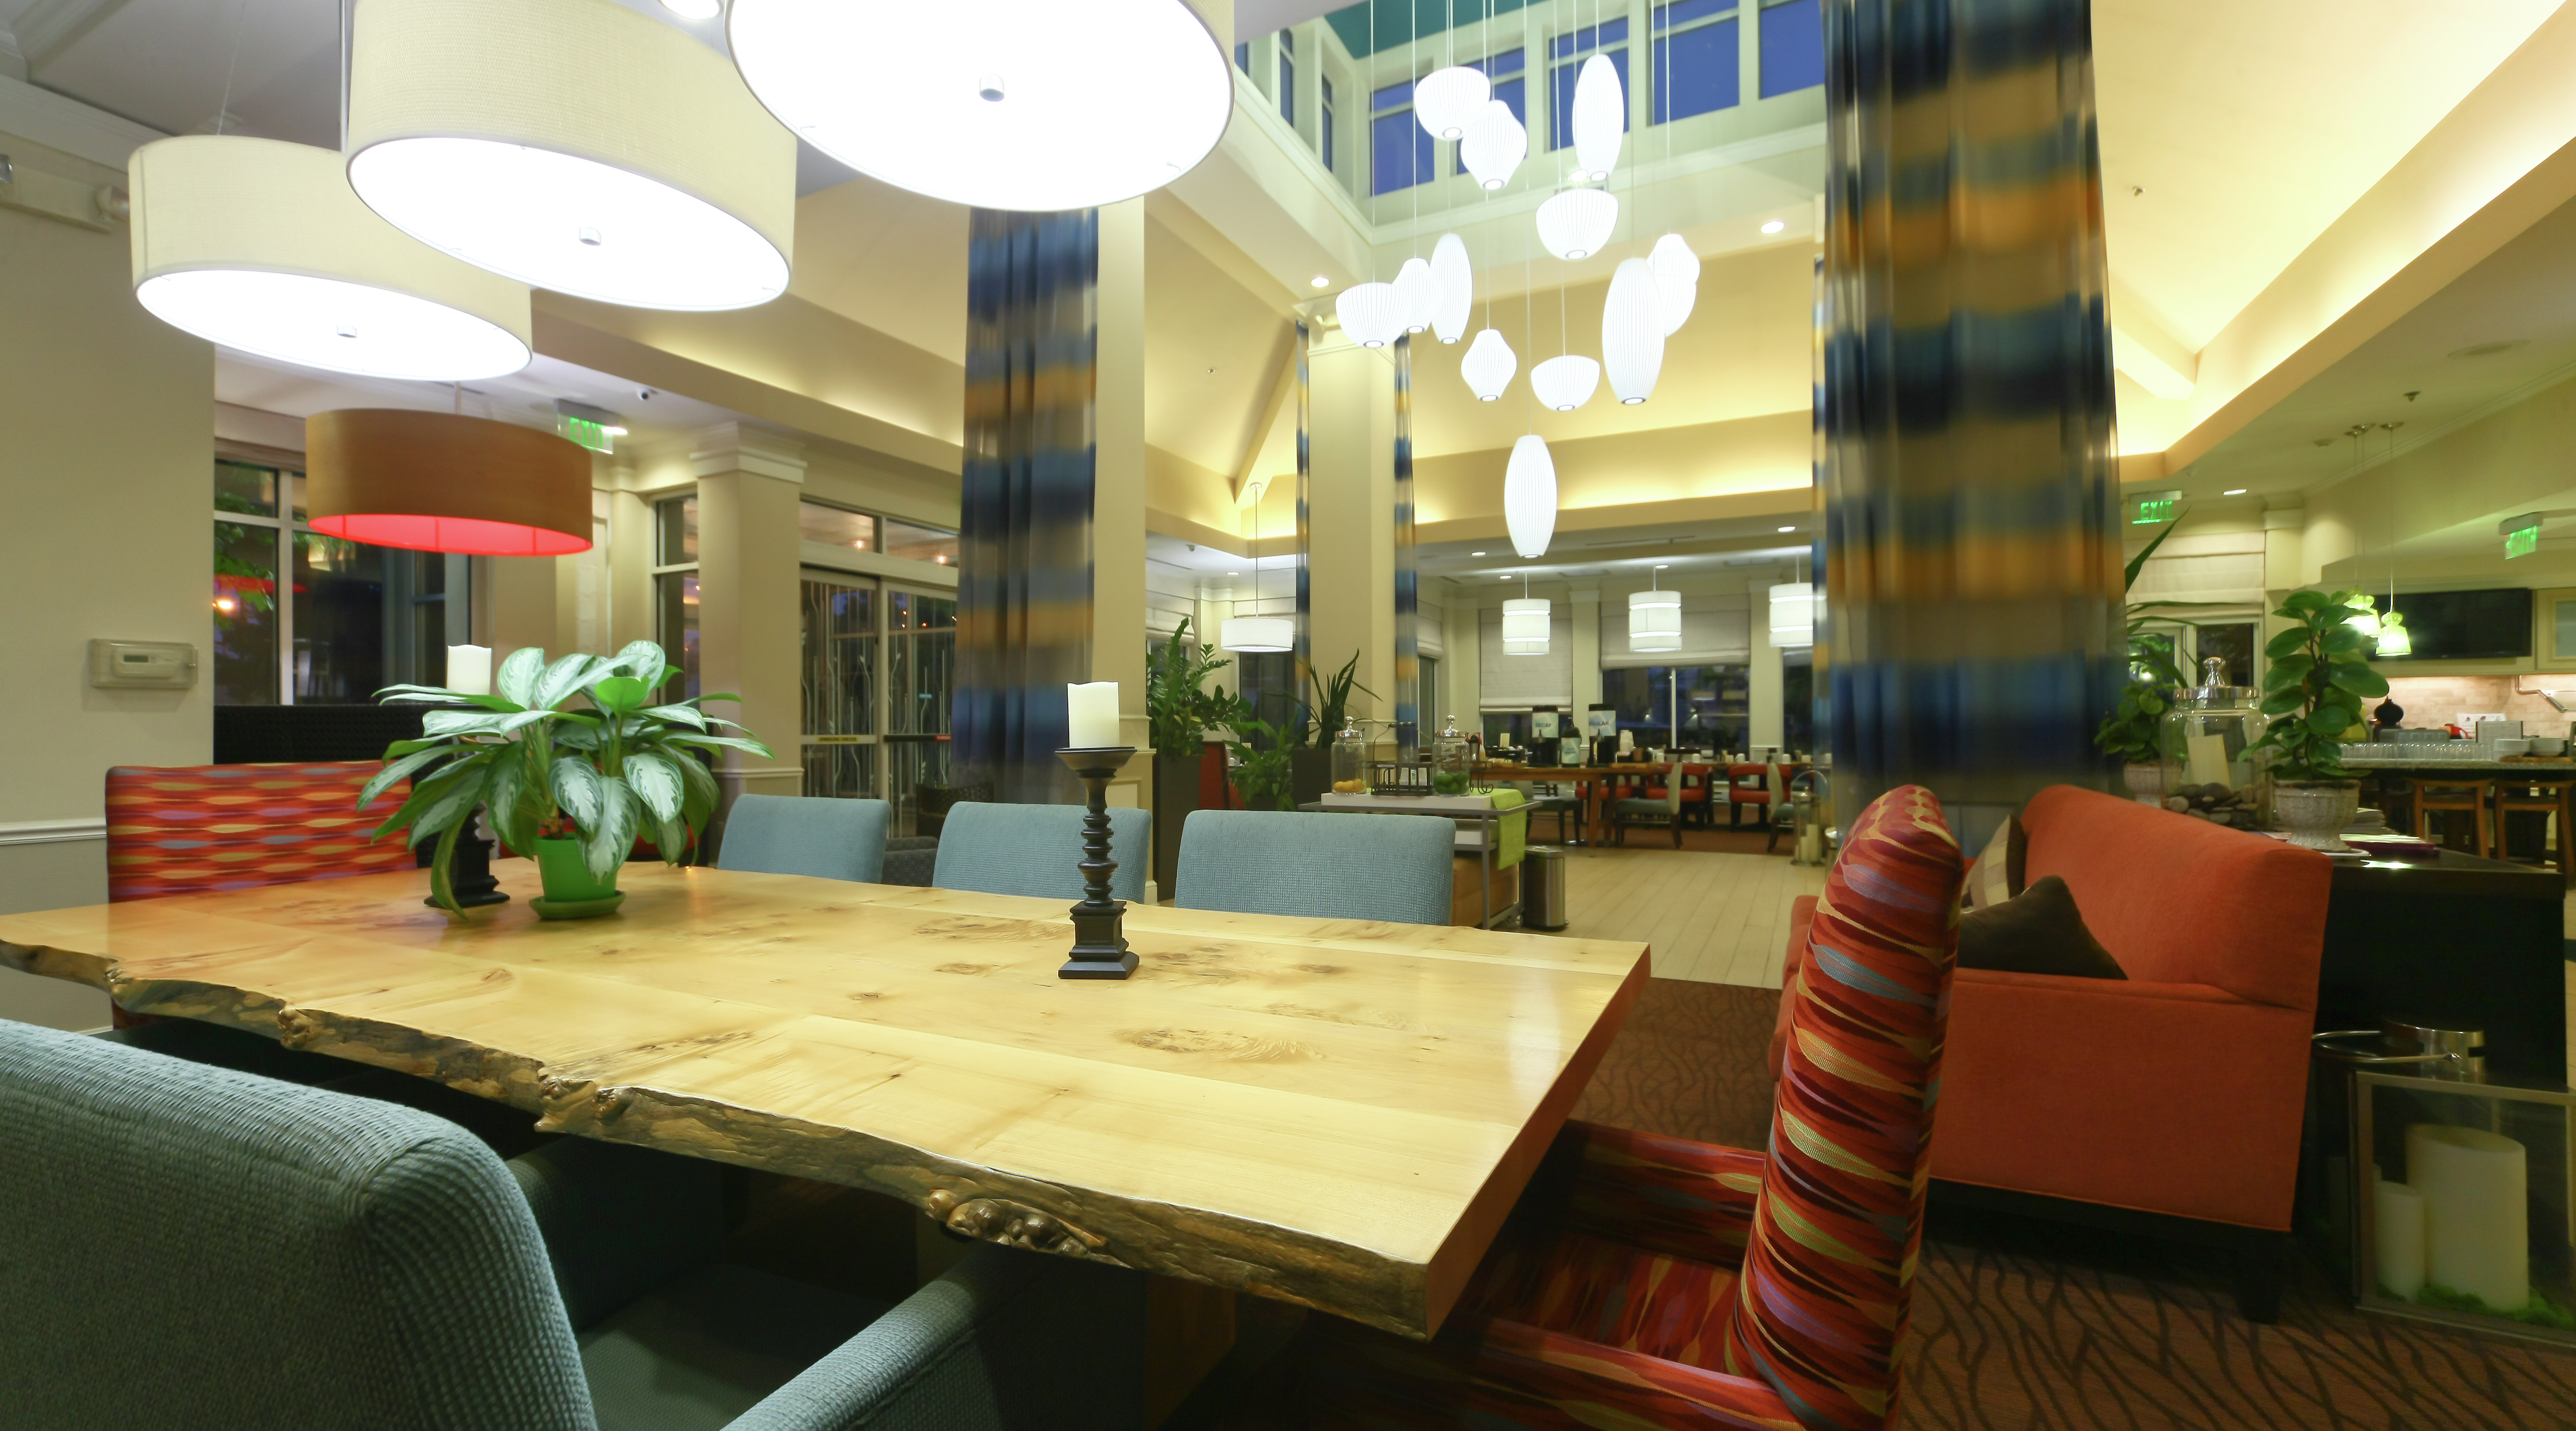 Table in Lobby of Hilton Garden Inn Secaucus